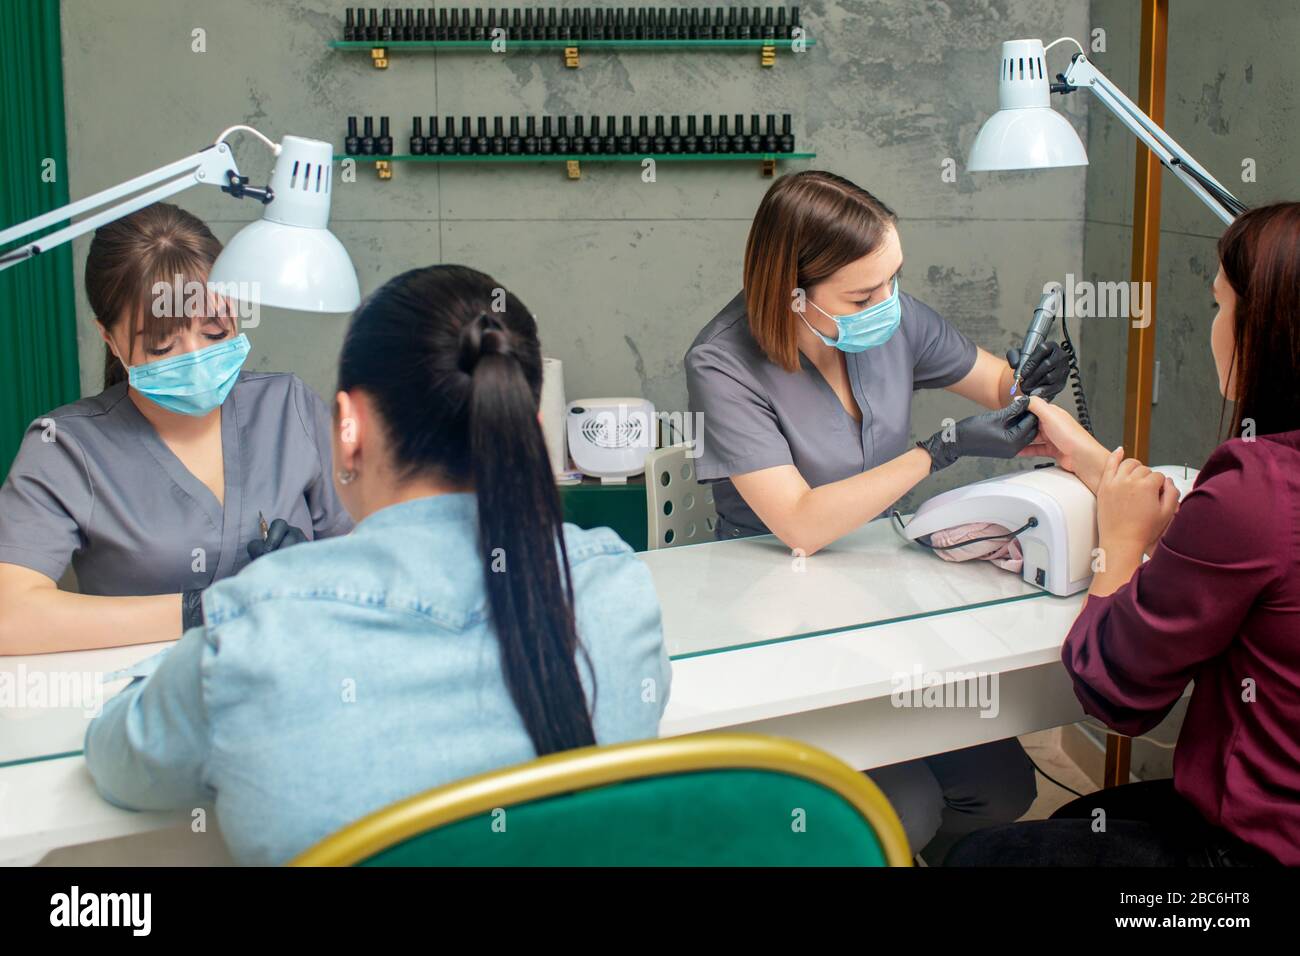 Women getting a manicure in beauty salon Stock Photo - Alamy